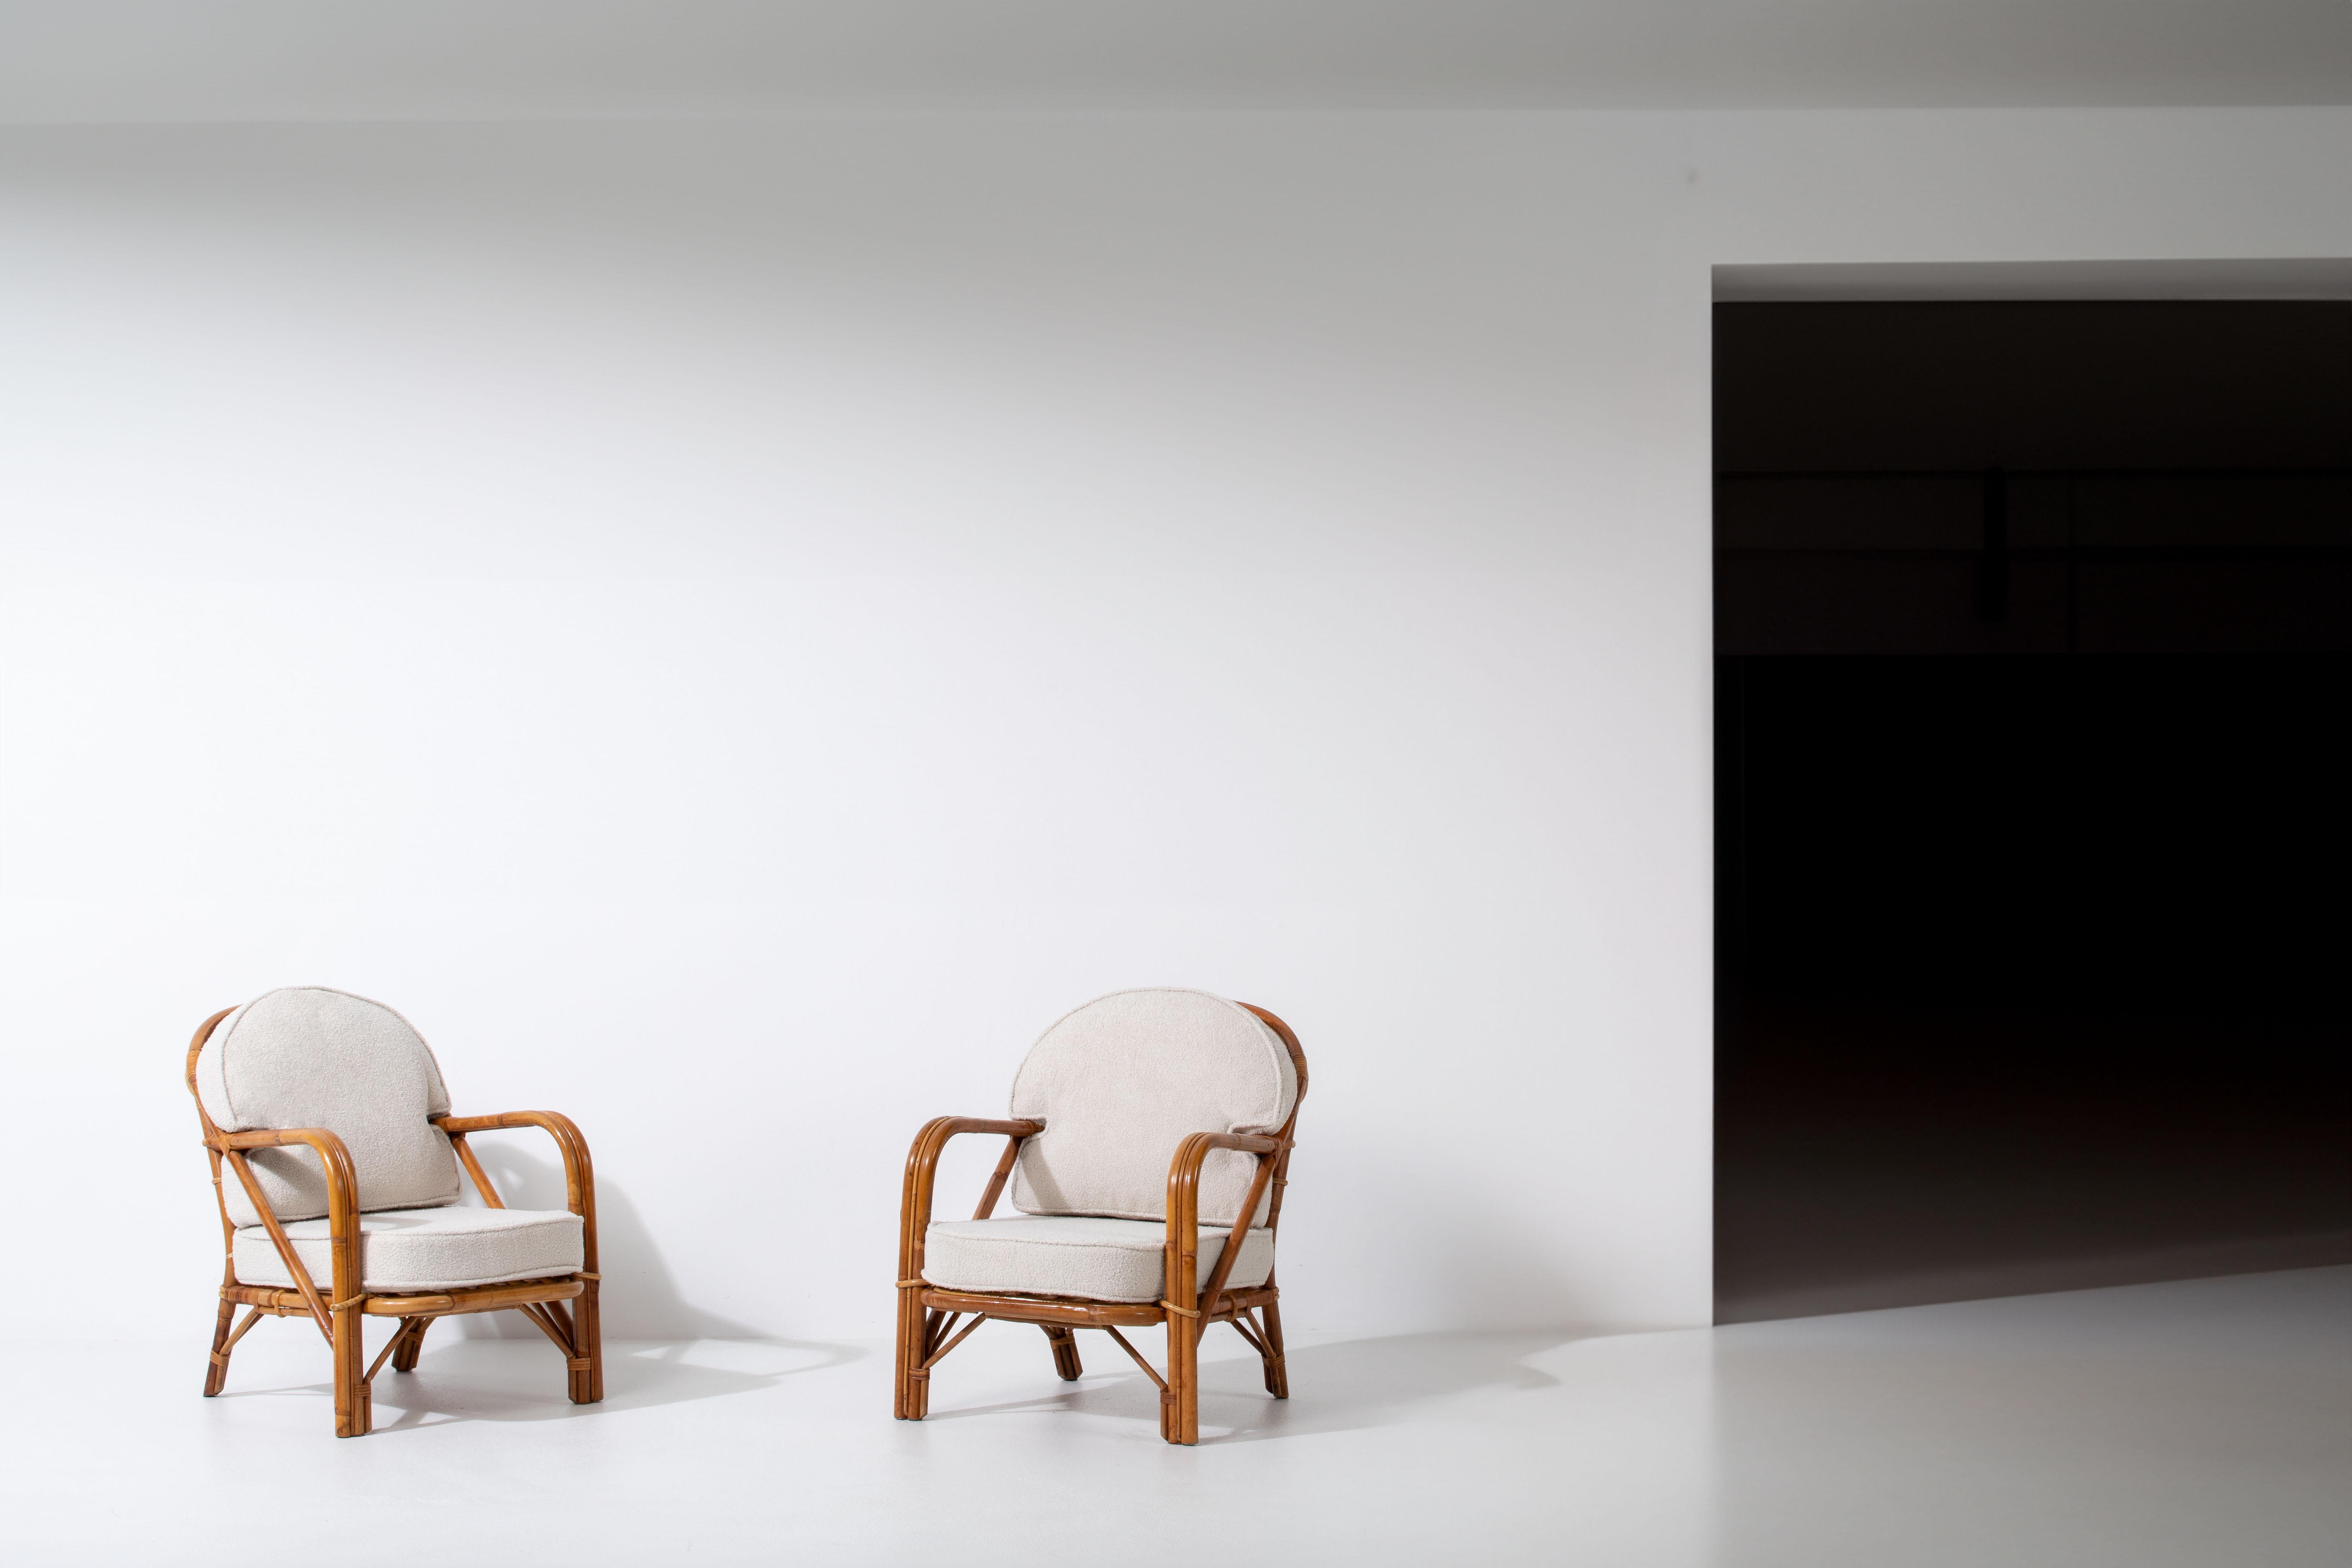 Ein fesselndes Sesselpaar aus Rattan mit Bouclé-Polsterung, entworfen von dem renommierten französischen Duo Adrien Audoux und Frida Minet. Diese außergewöhnliche Kreation ist eine Hommage an ihre besondere Designphilosophie, die von der Natur